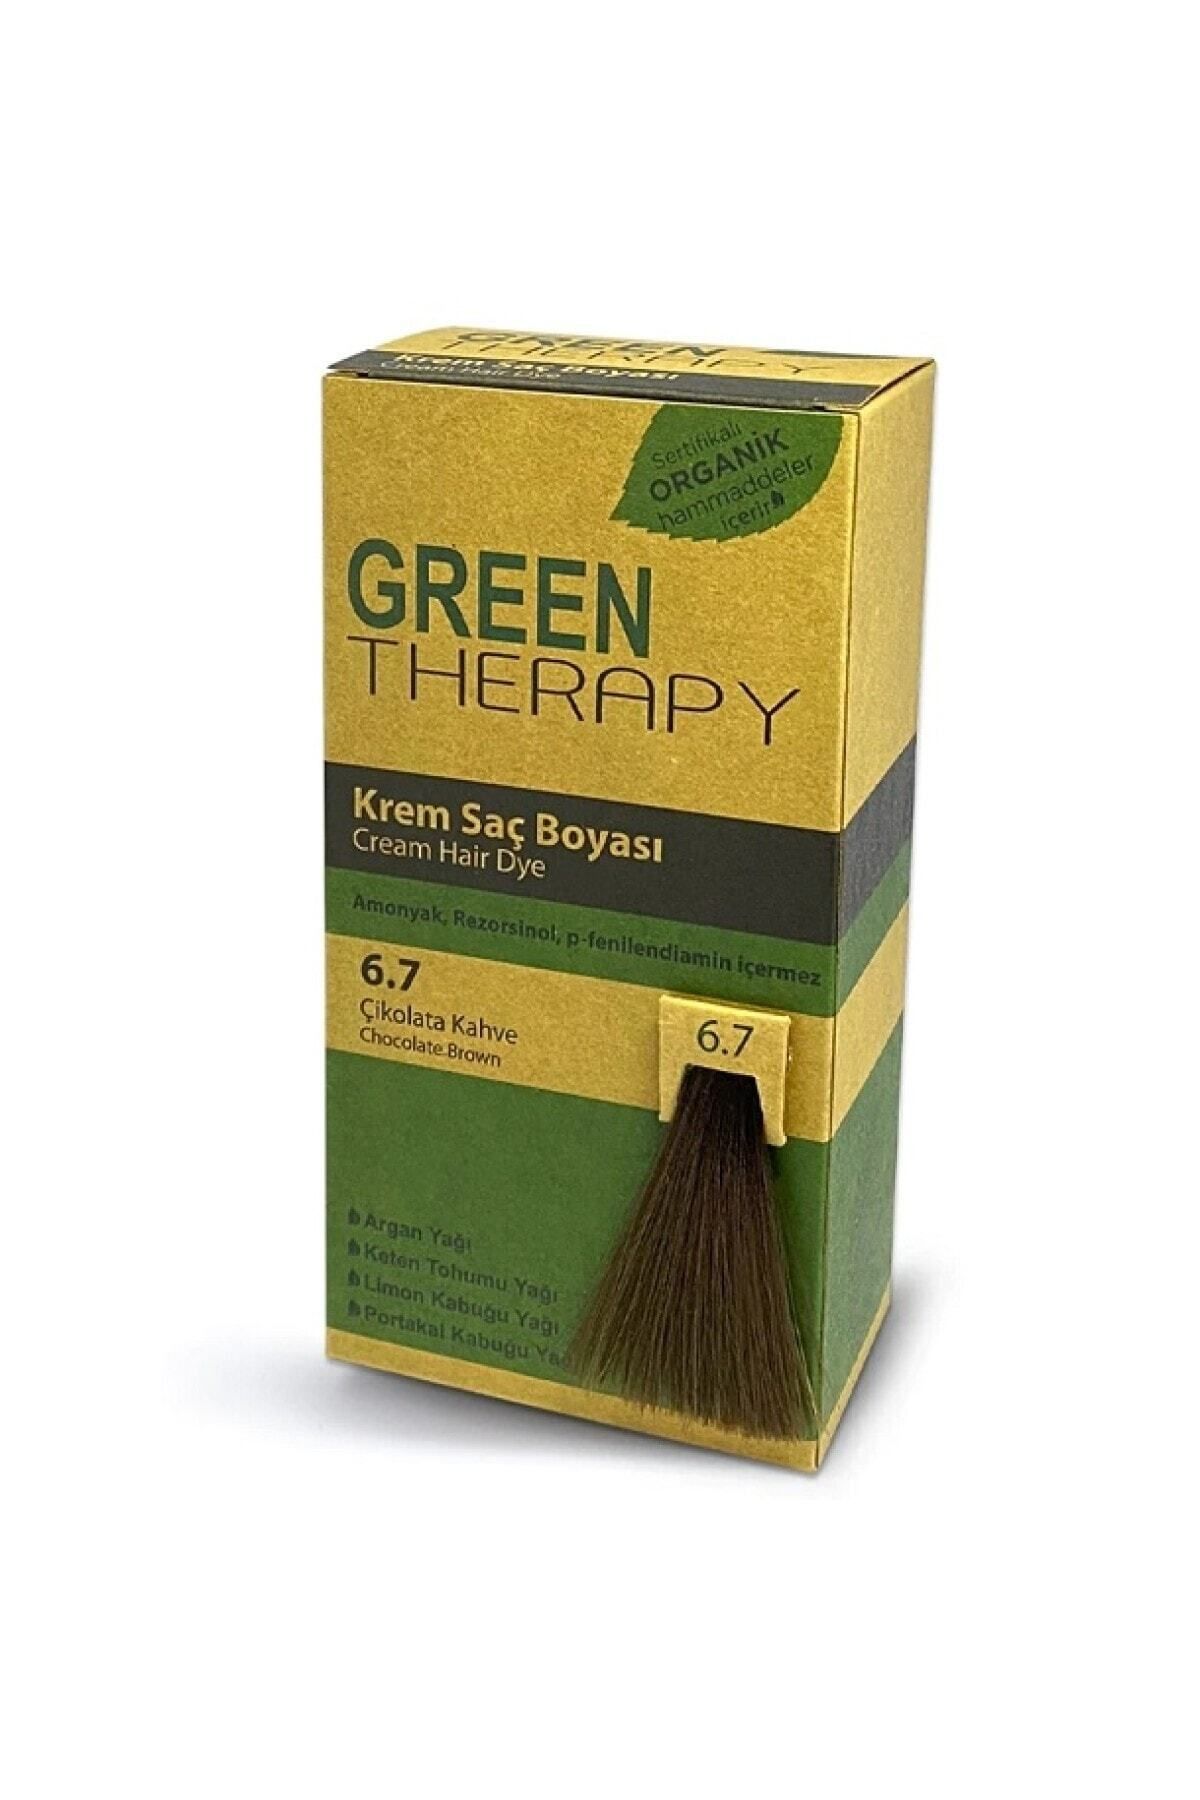 Green Therapy Krem Saç Boyası 6.7 Çikolata Kahve